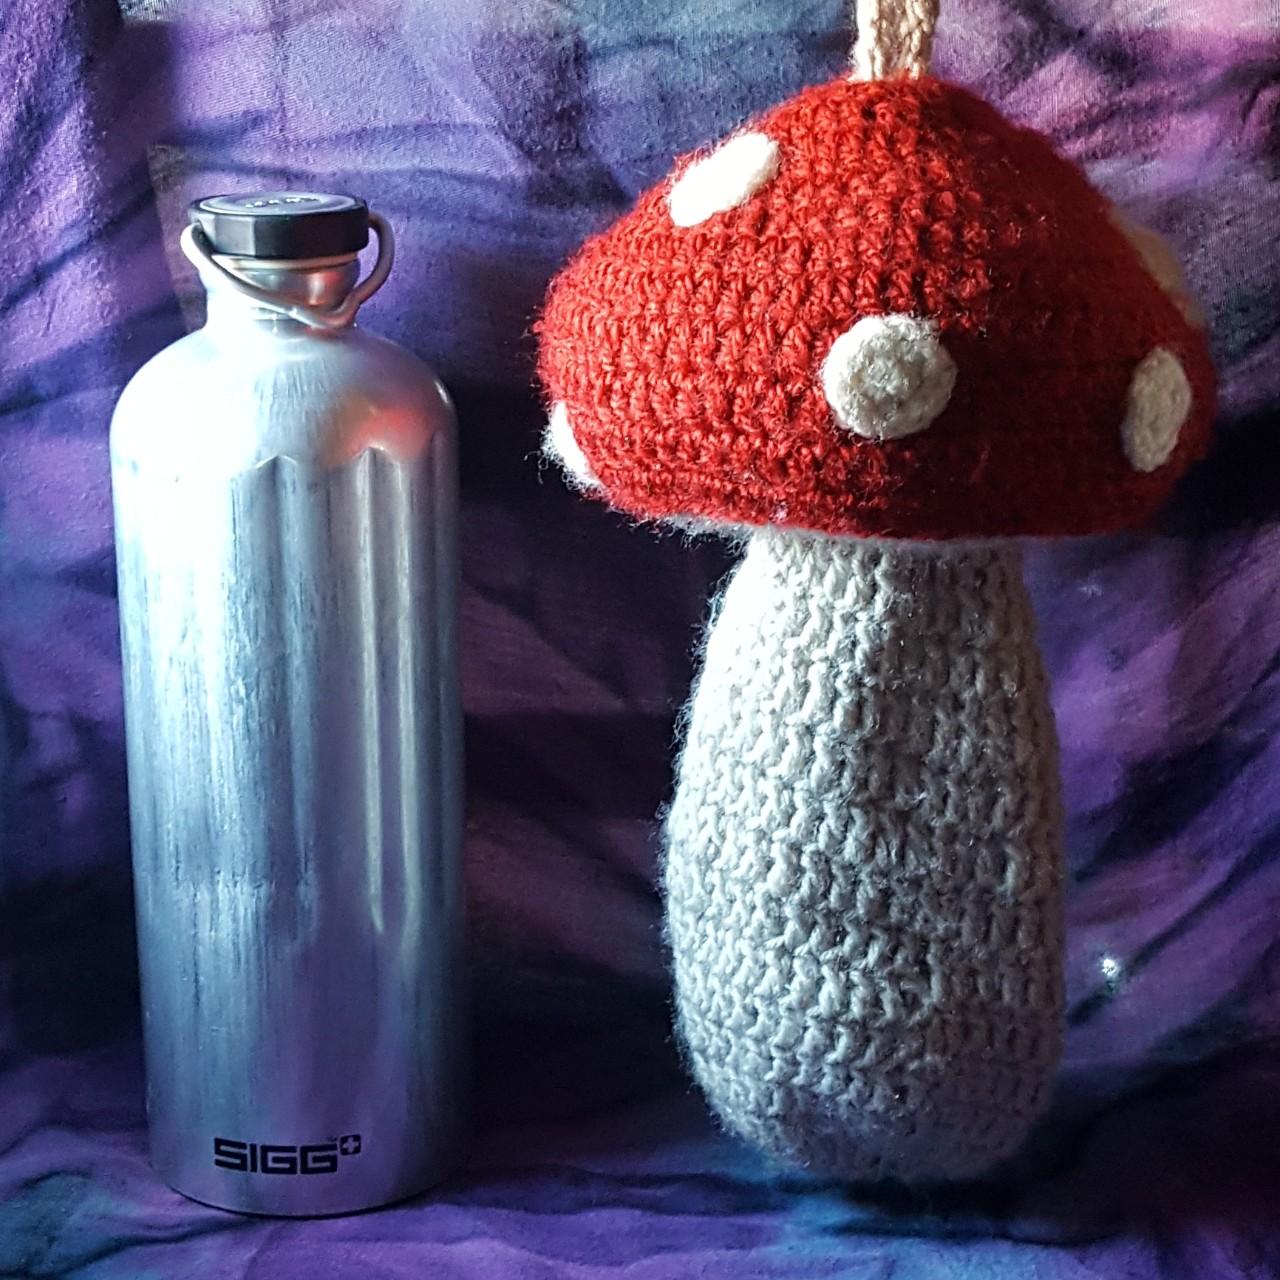 Product Image 4 - Magic mushroom water bottle holder.

Holds